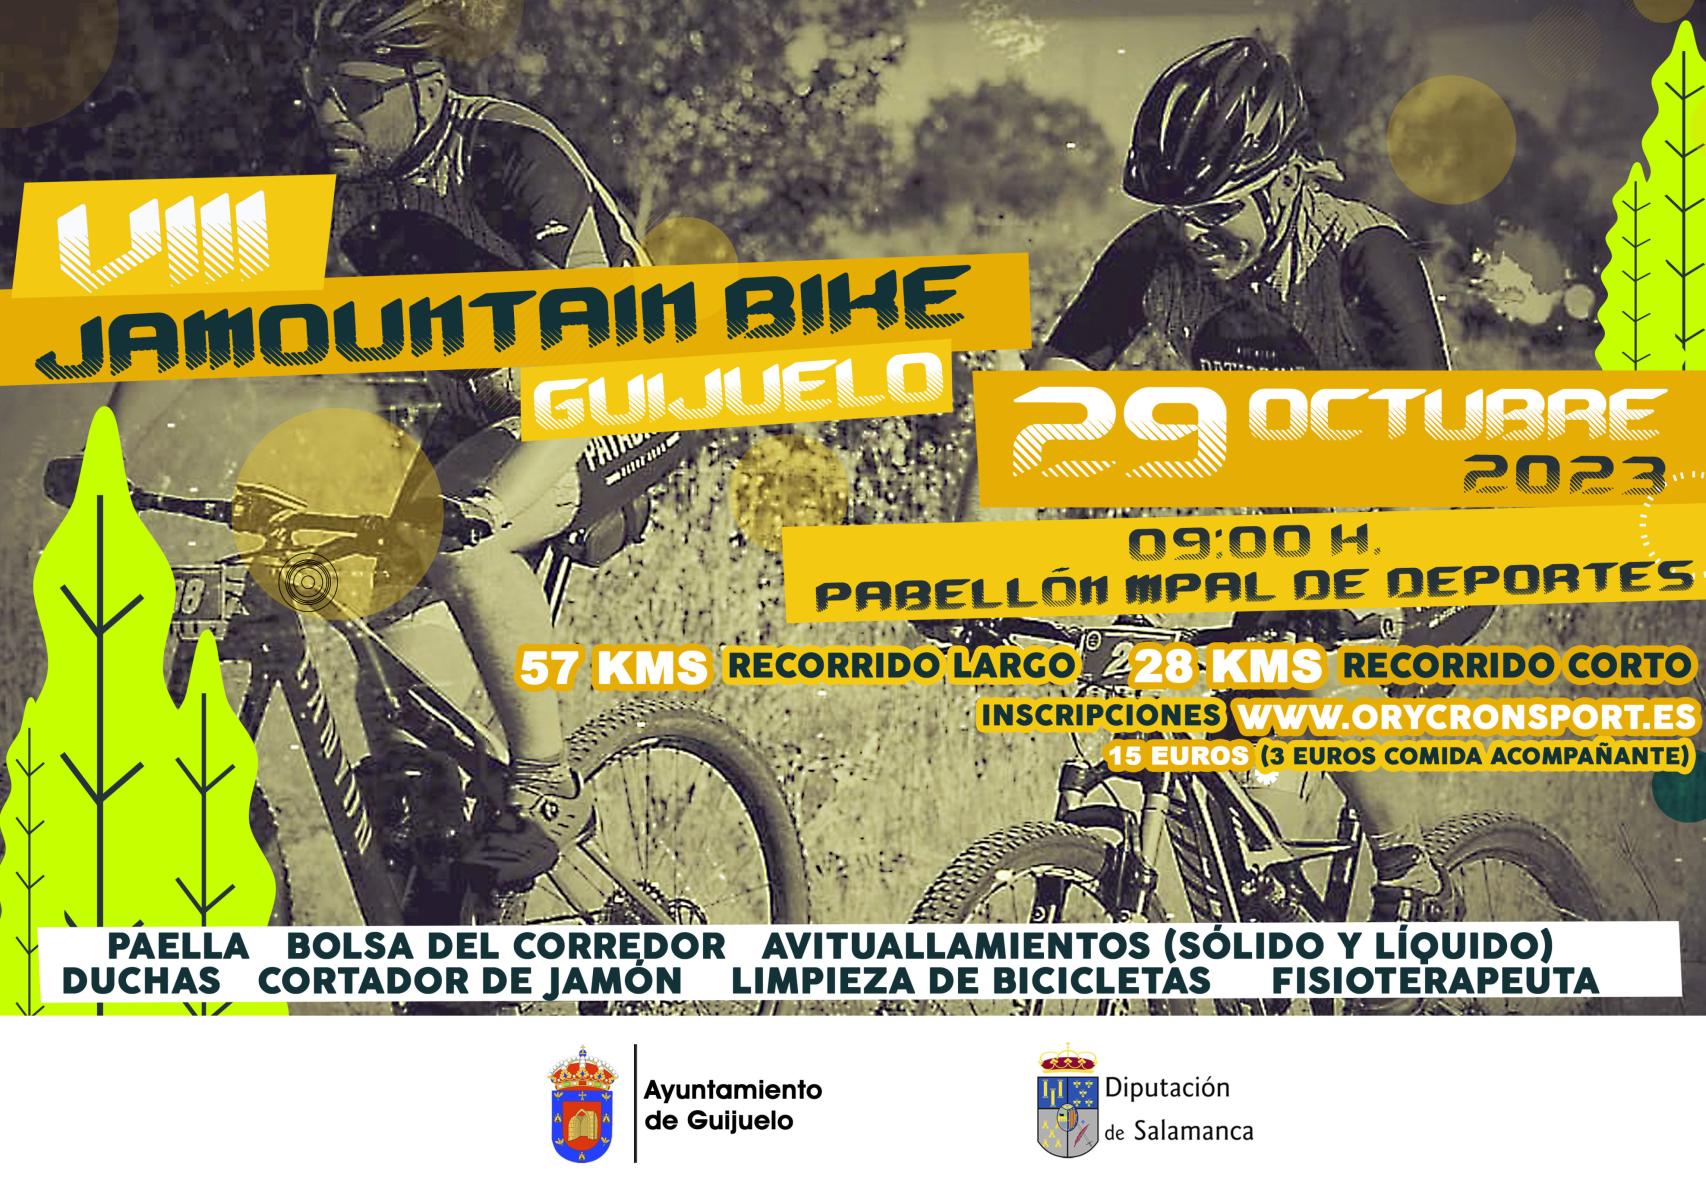 29 OCT Jamountain Bike Guijuelo